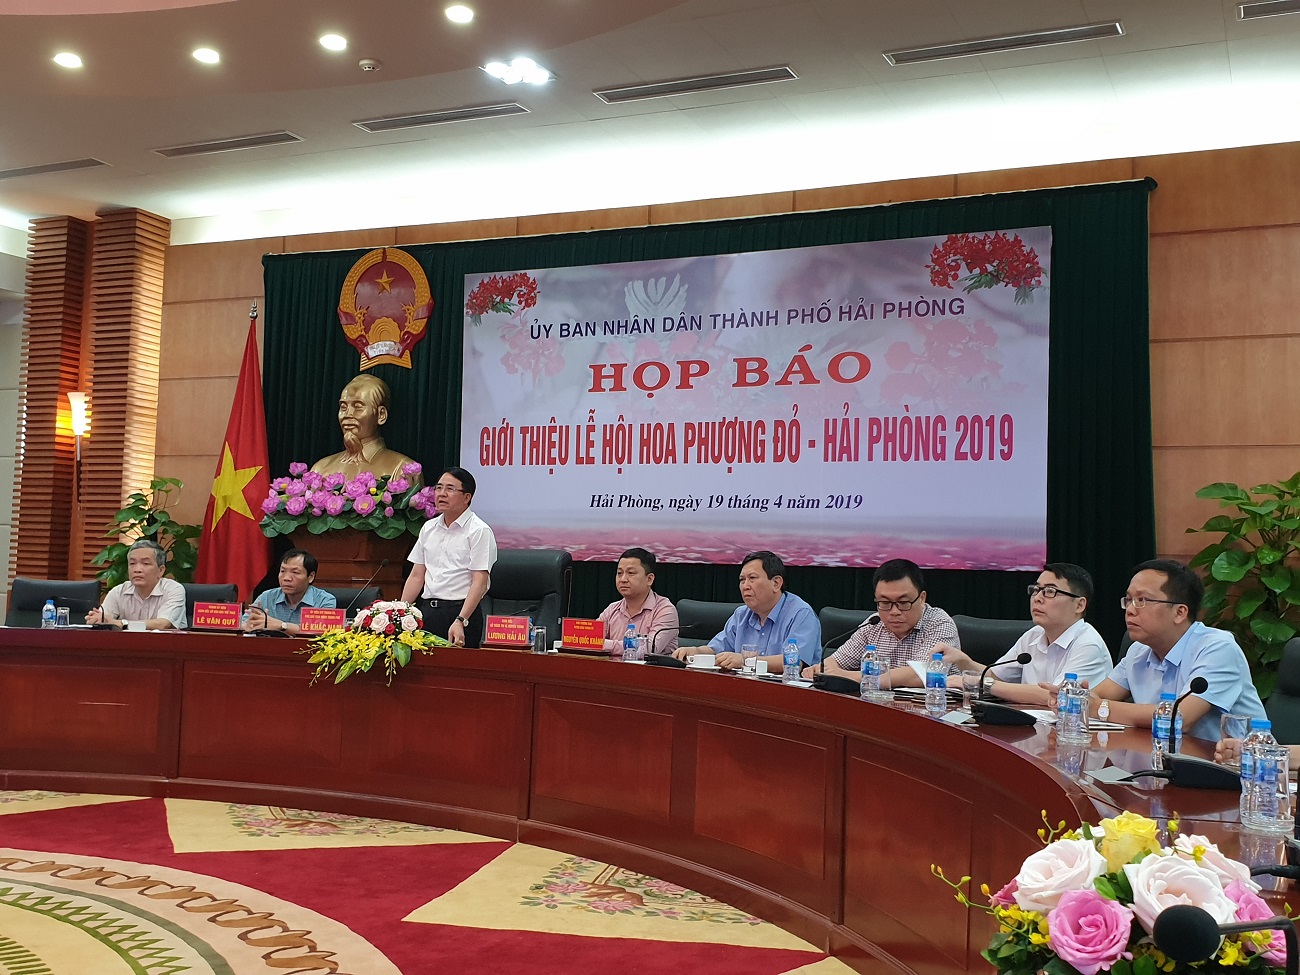 Ông Lê Khắc Nam, Phó Chủ tịch UBND thành phố Hải Phòng công bố thông tin tại buổi họp báo